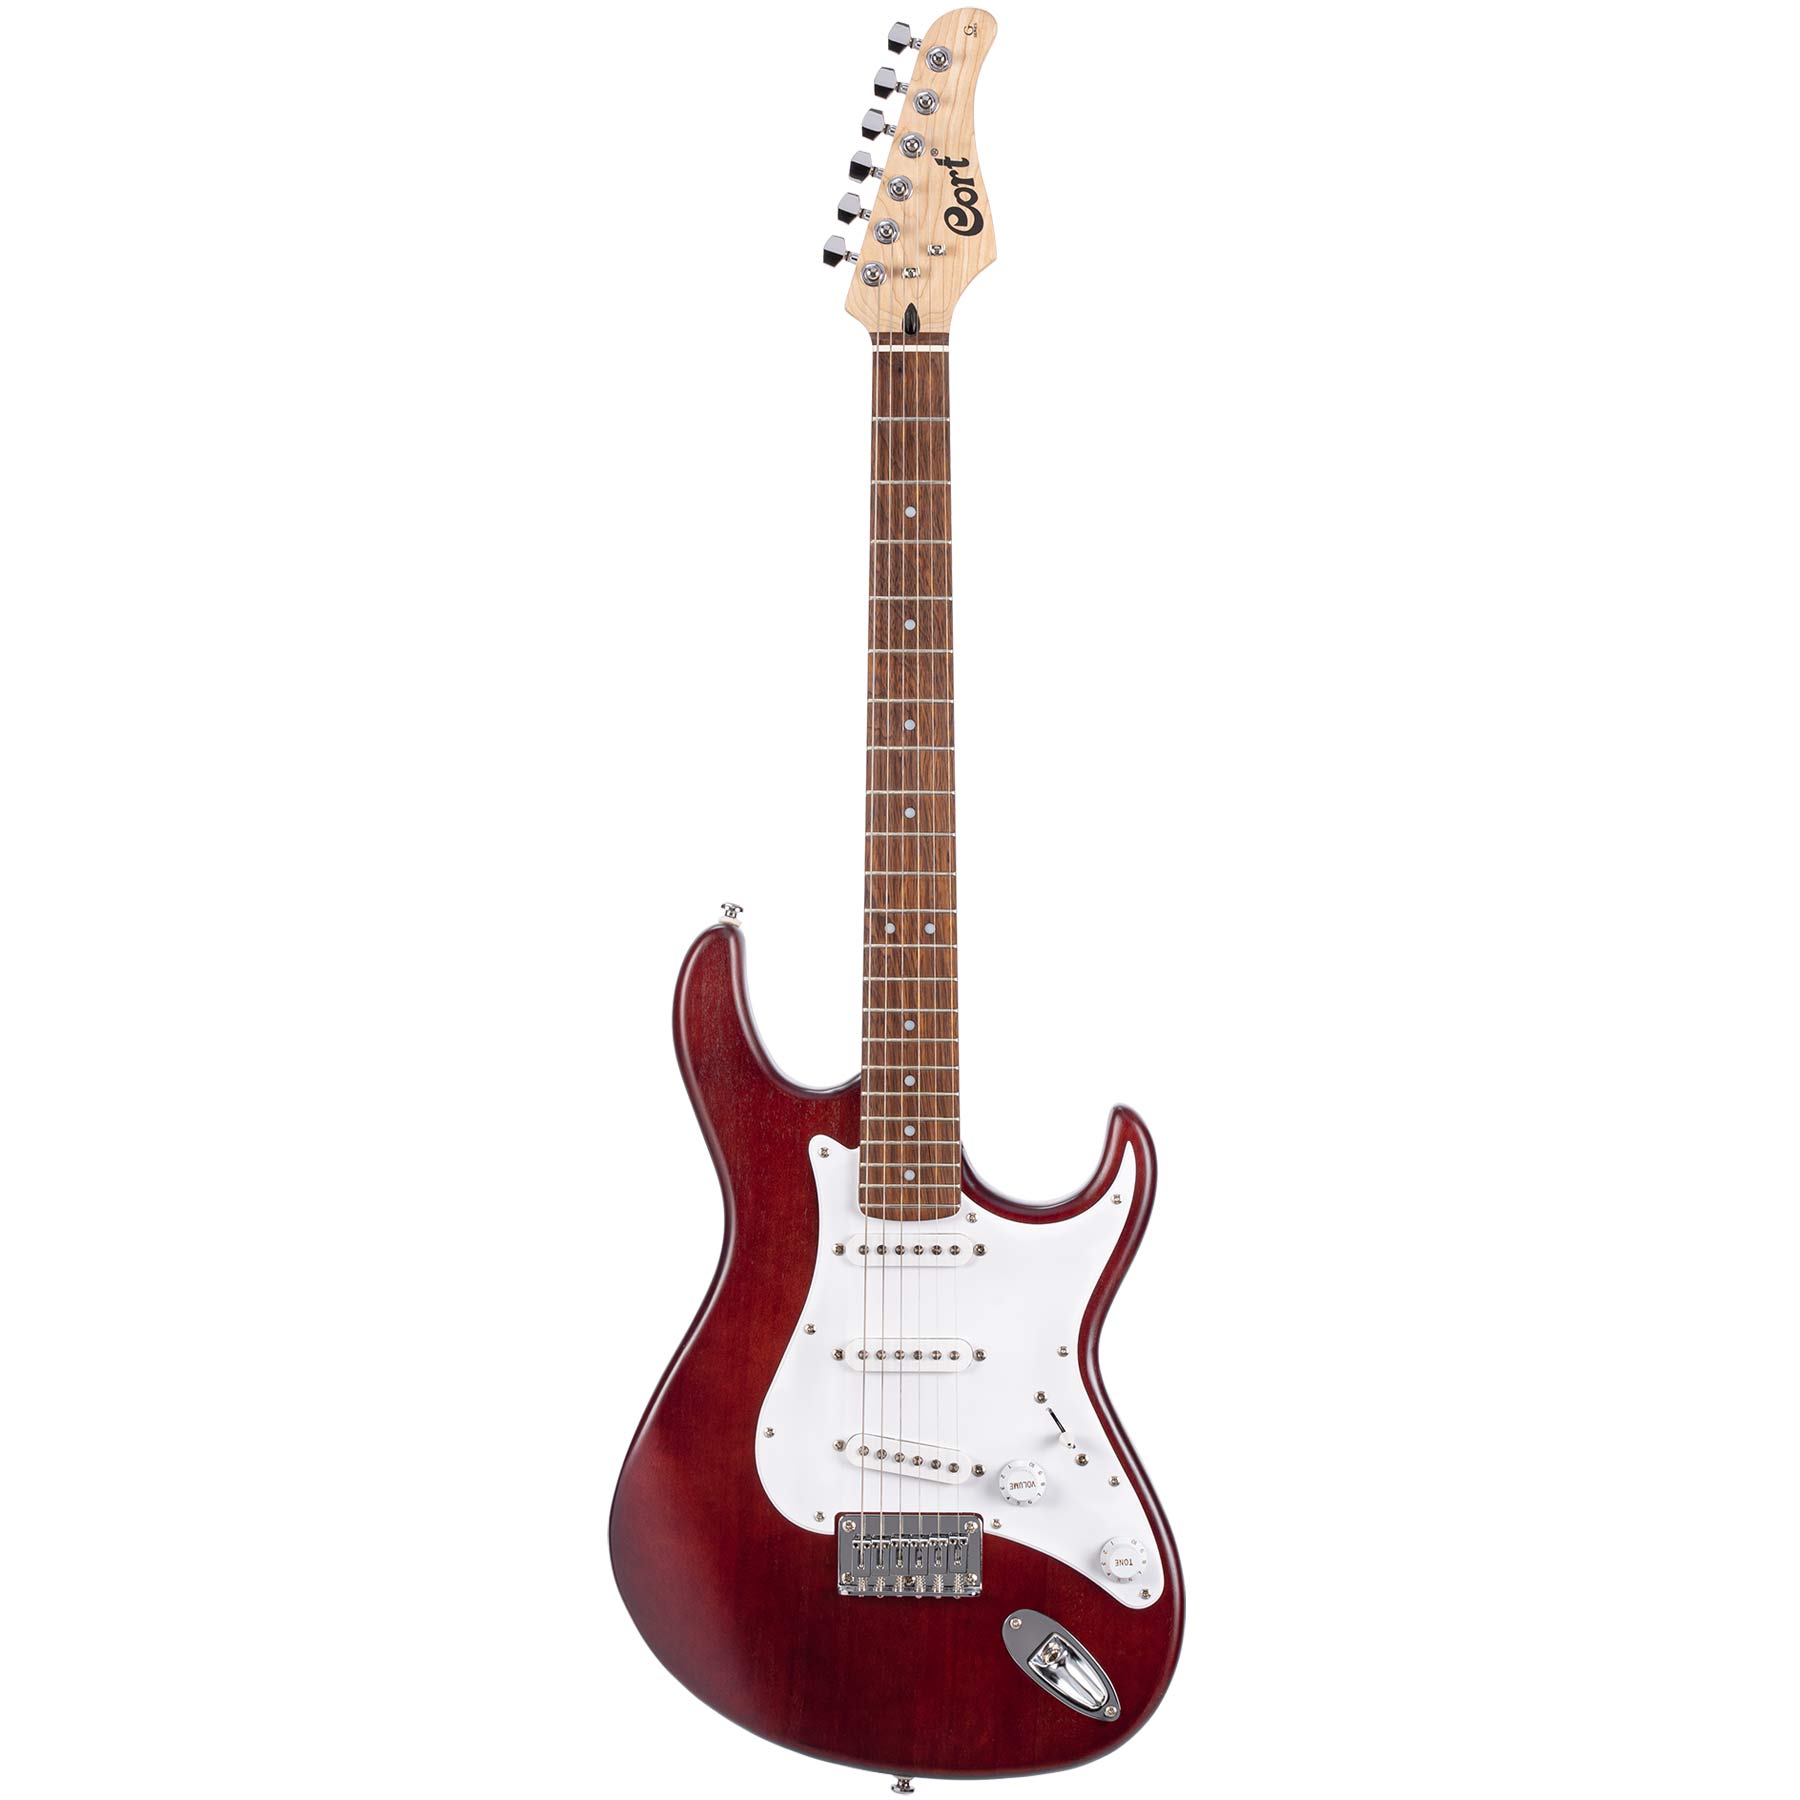 Comprar Guitarra Electrica de iniciacion al mejor precio en Prieto M�sica